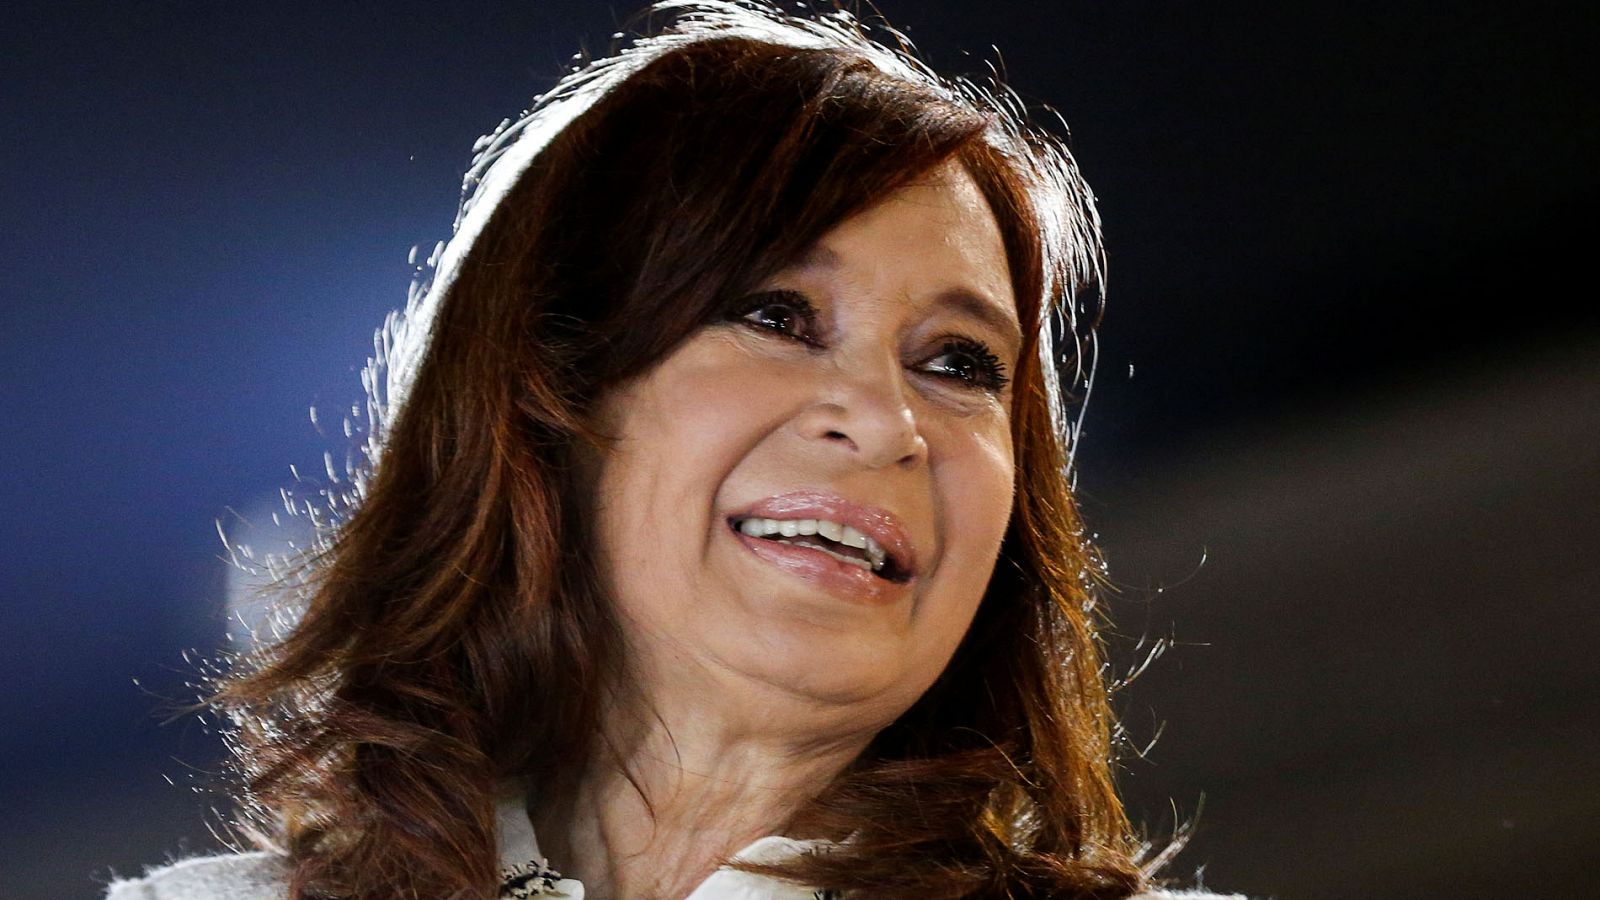 Juicio Cristina Fernández de Kirchner | Cristina Fernández de Kirchner declara en el juicio por un caso de corrupción - RTVE.es